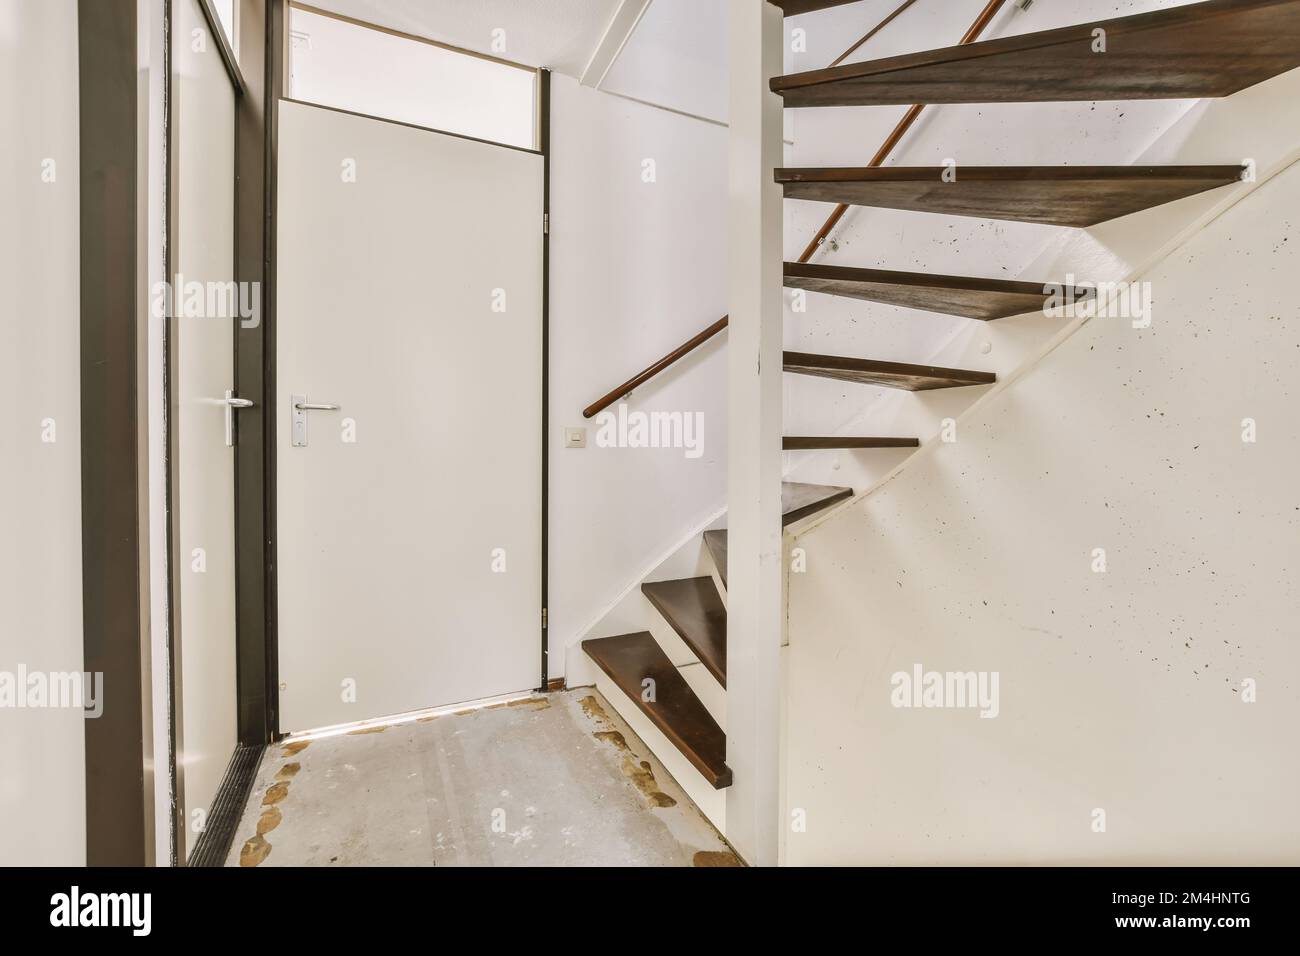 Das Innere eines Hauses, das gerade renoviert wird und abgebaut wurde, um Platz für neue Treppen zu machen Stockfoto